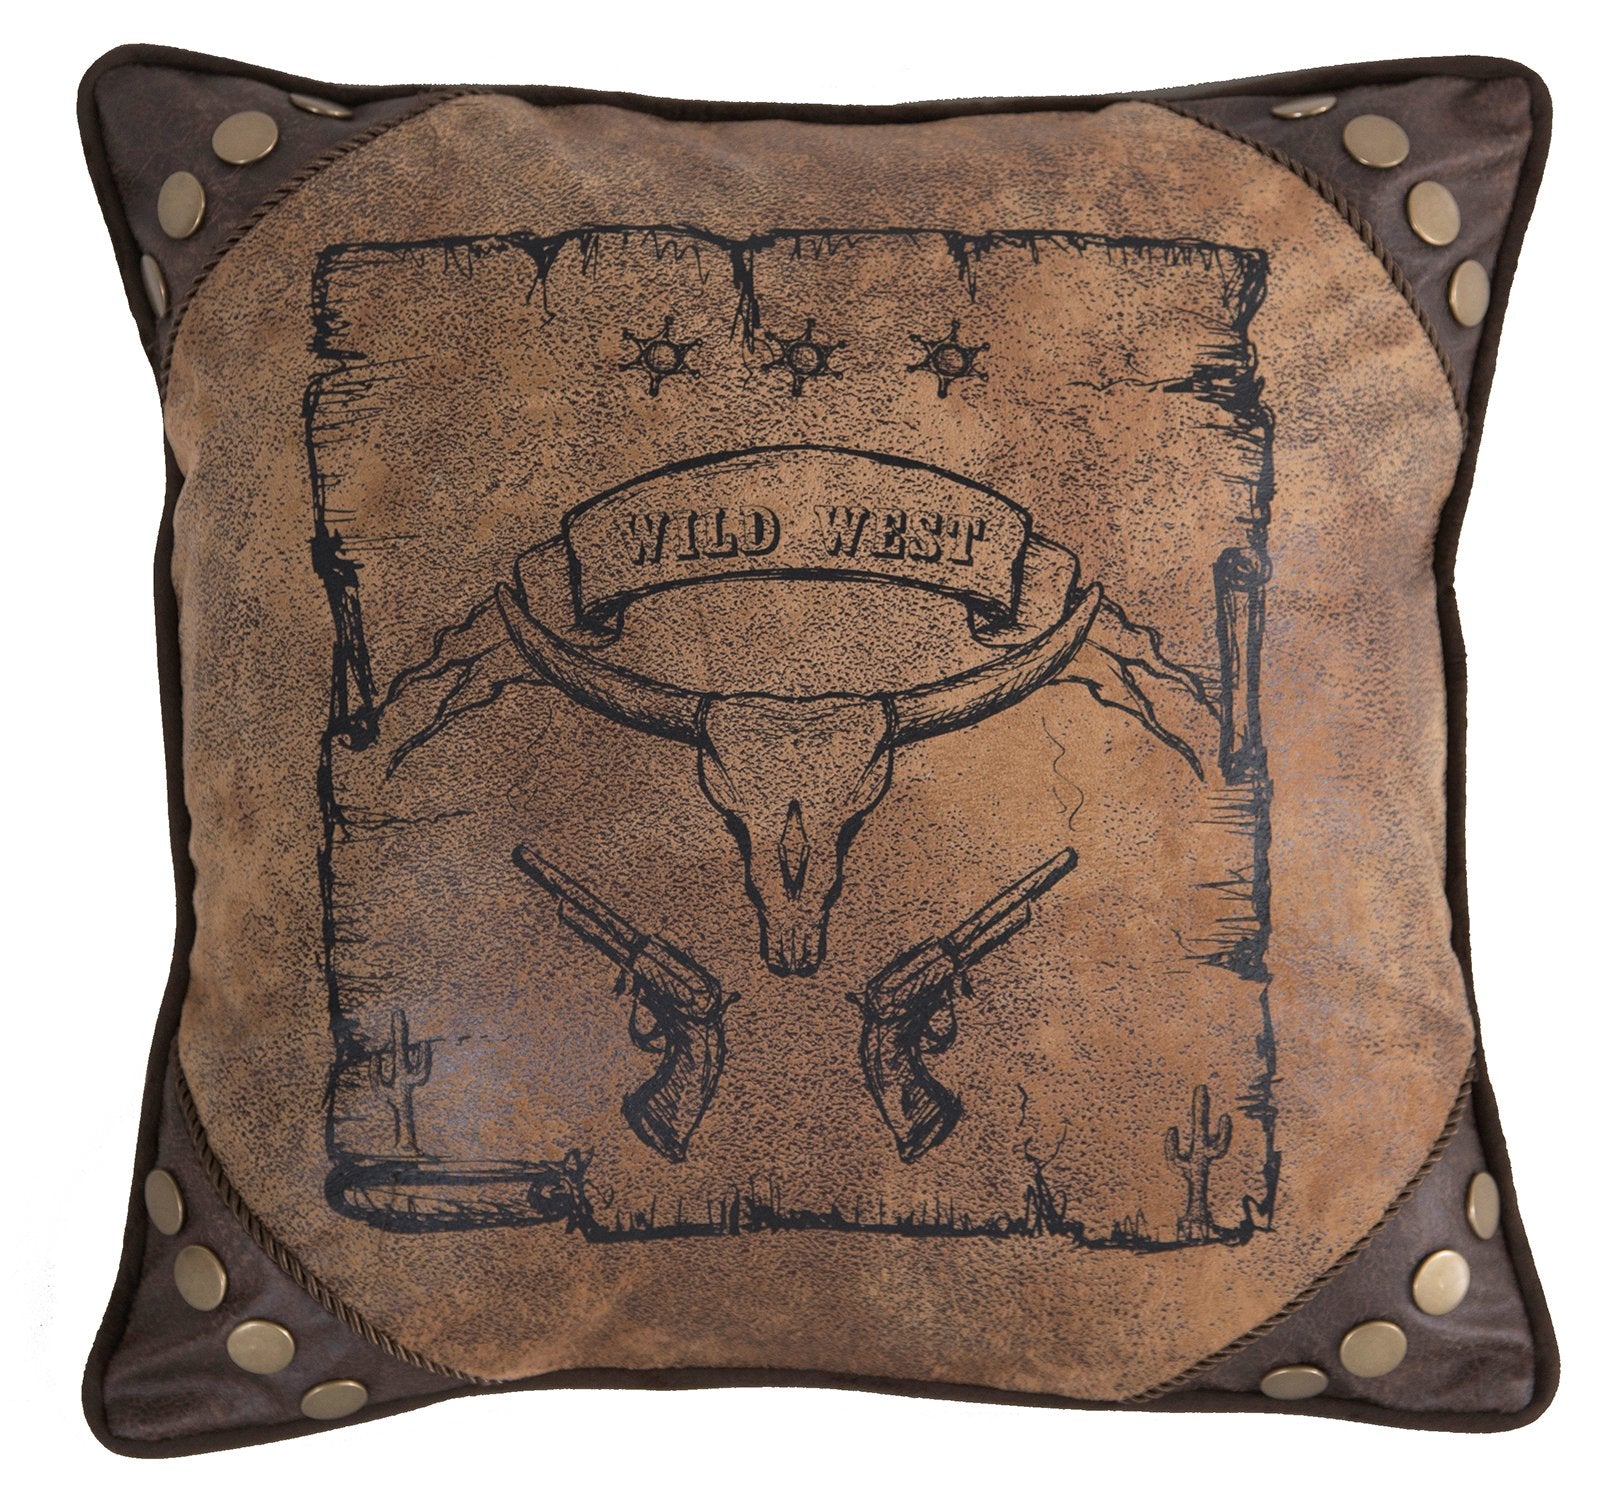 Wild West Pillow Carstens - Unique Linens Online